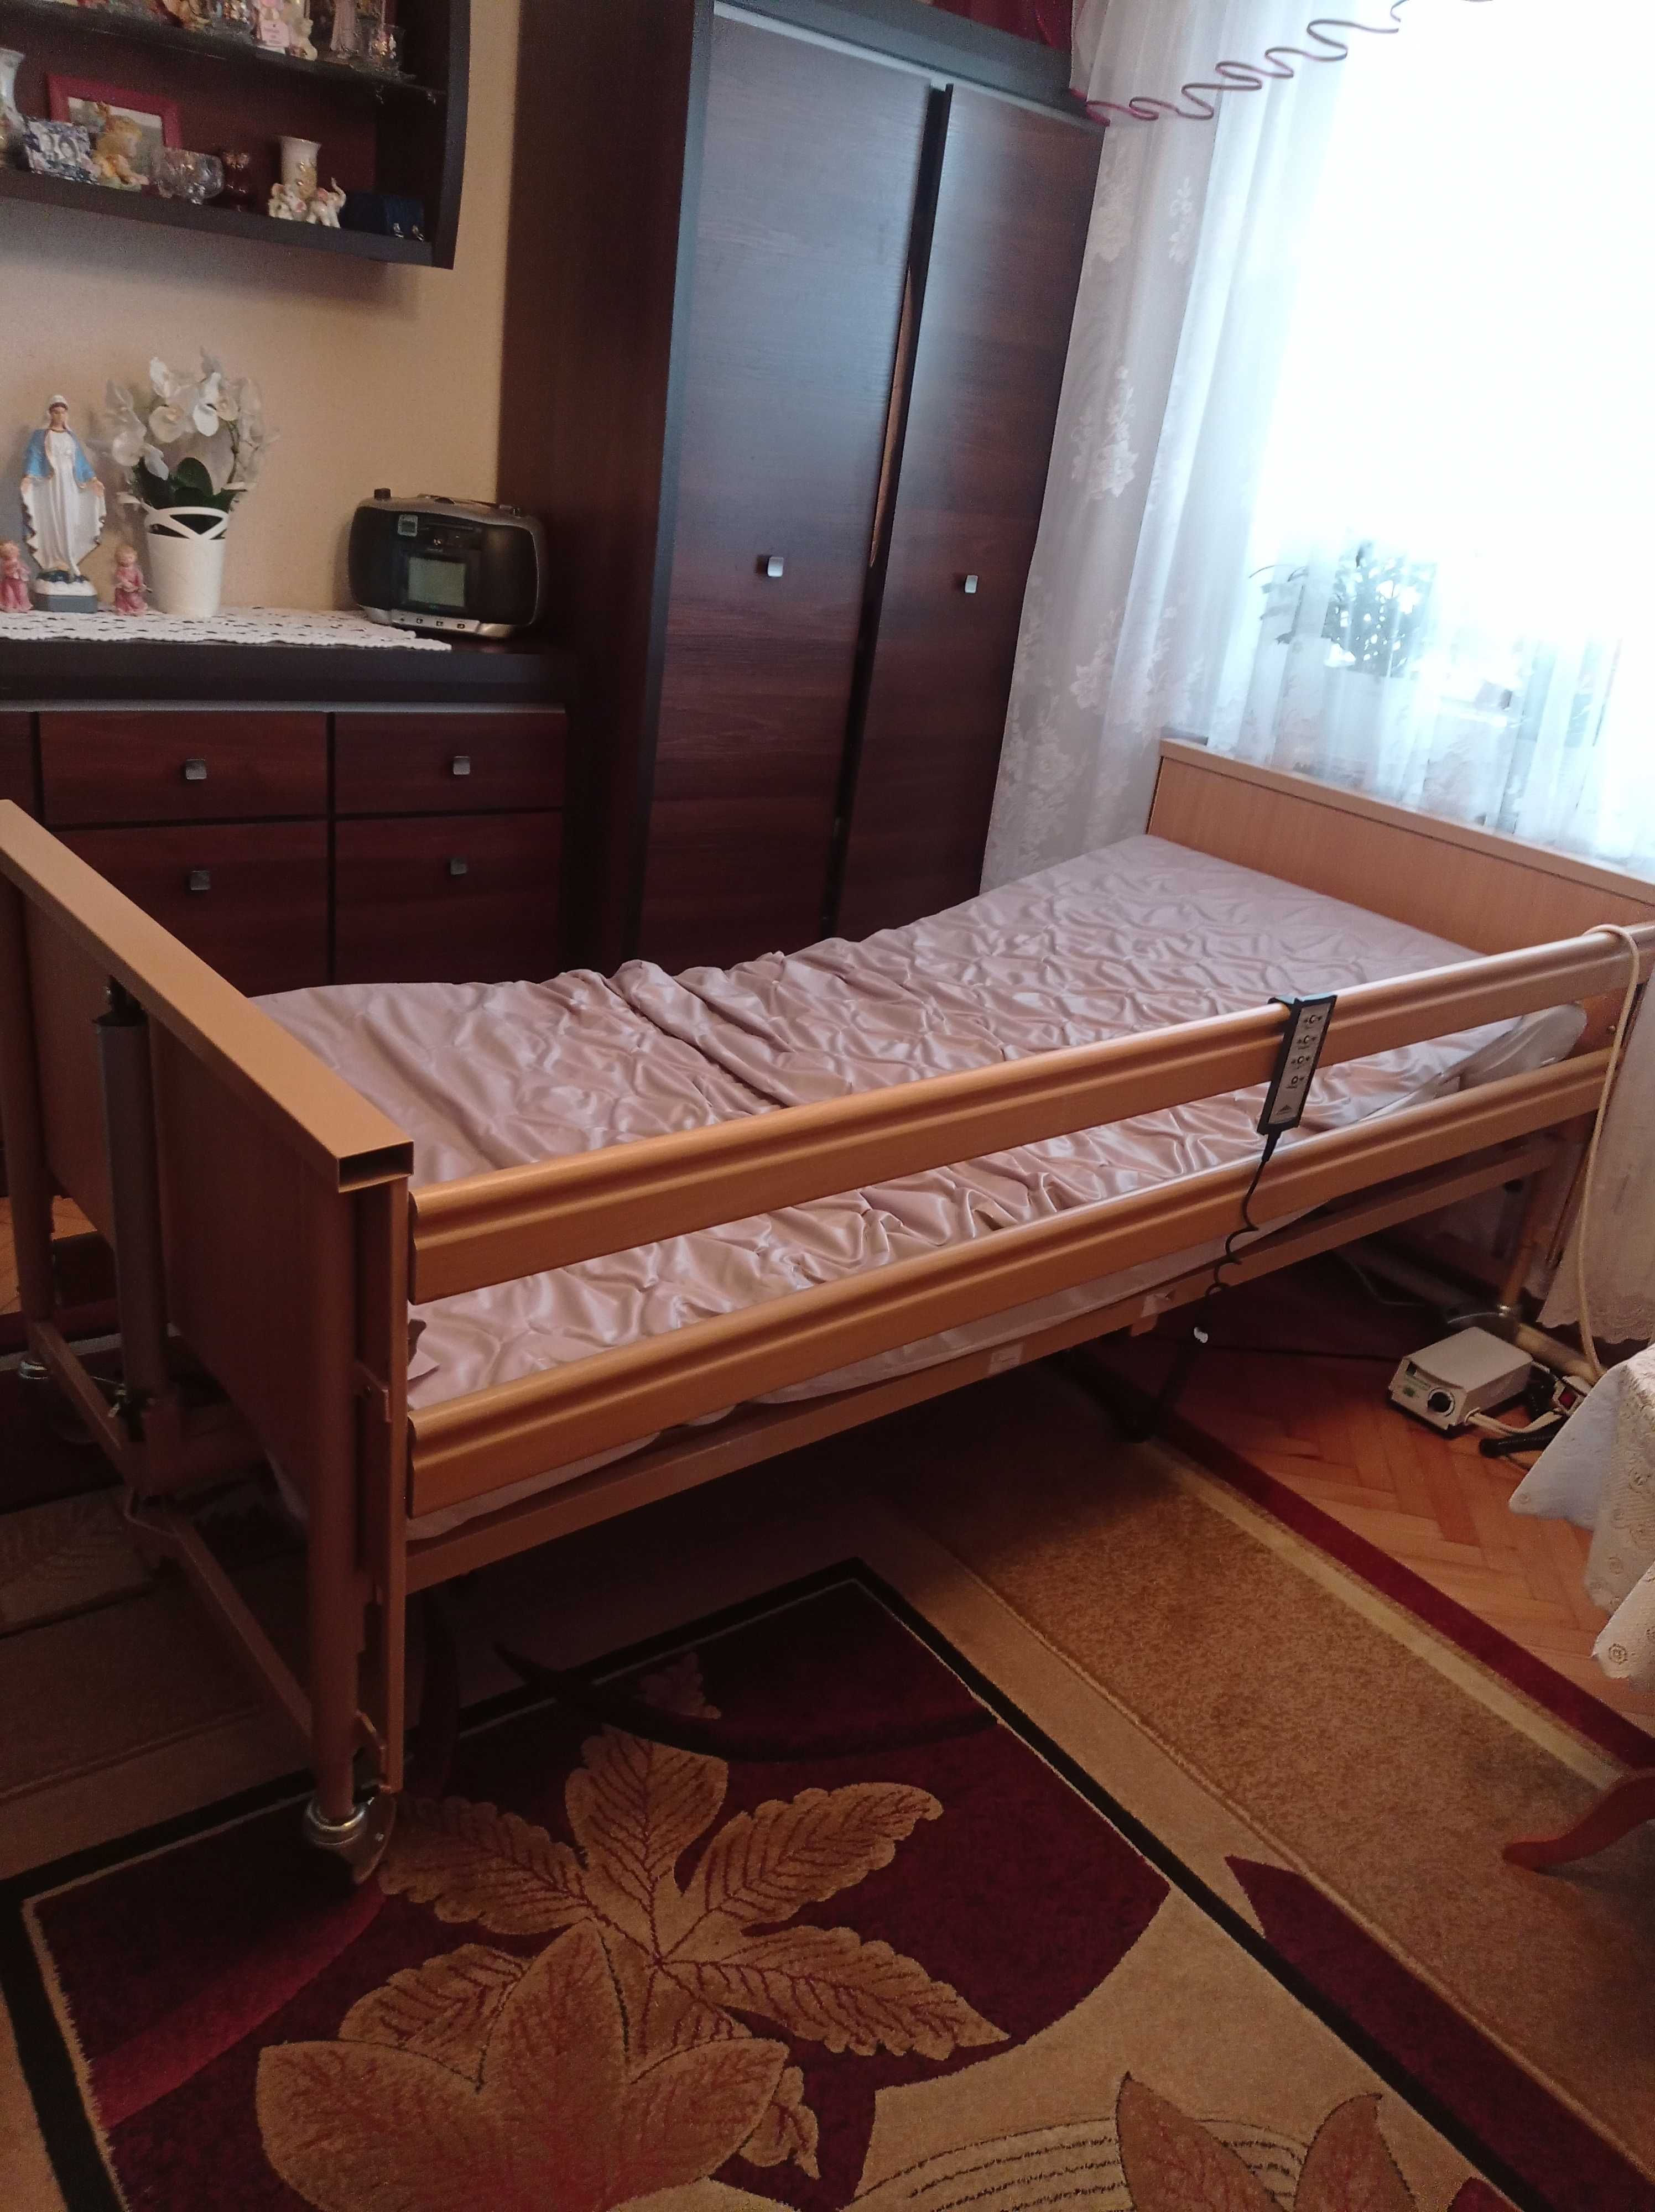 łóżko rehabilitacyjne + materac przeciwodleżynowy.